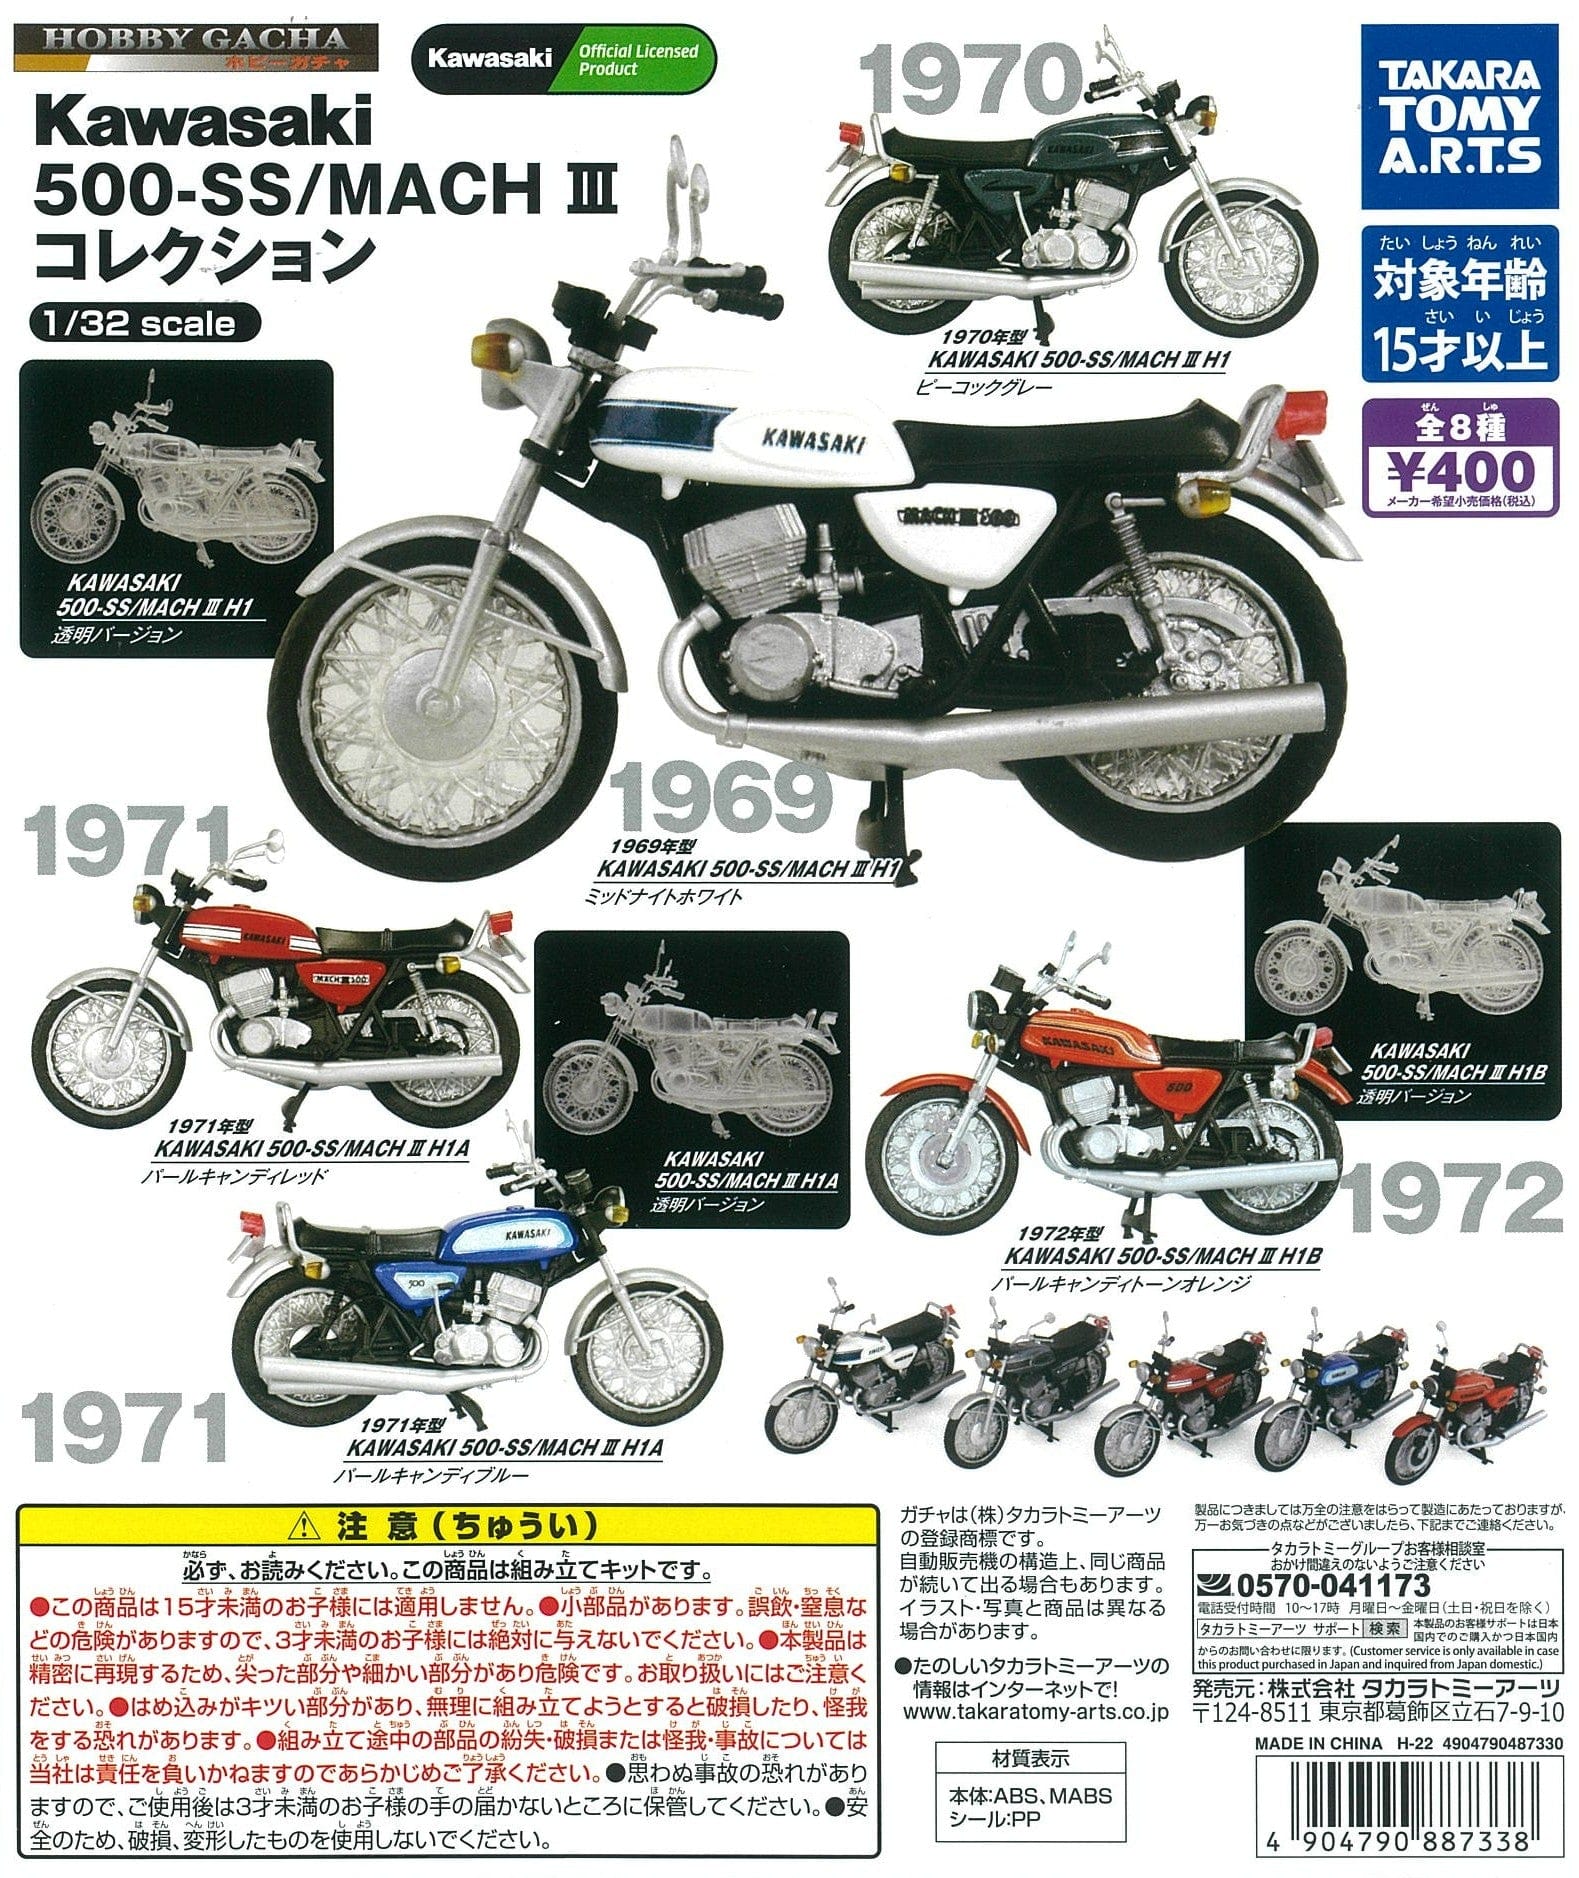 Takara Tomy A.R.T.S CP1906 Hobby Gacha KAWASAKI 500-SS / MACH III Collection